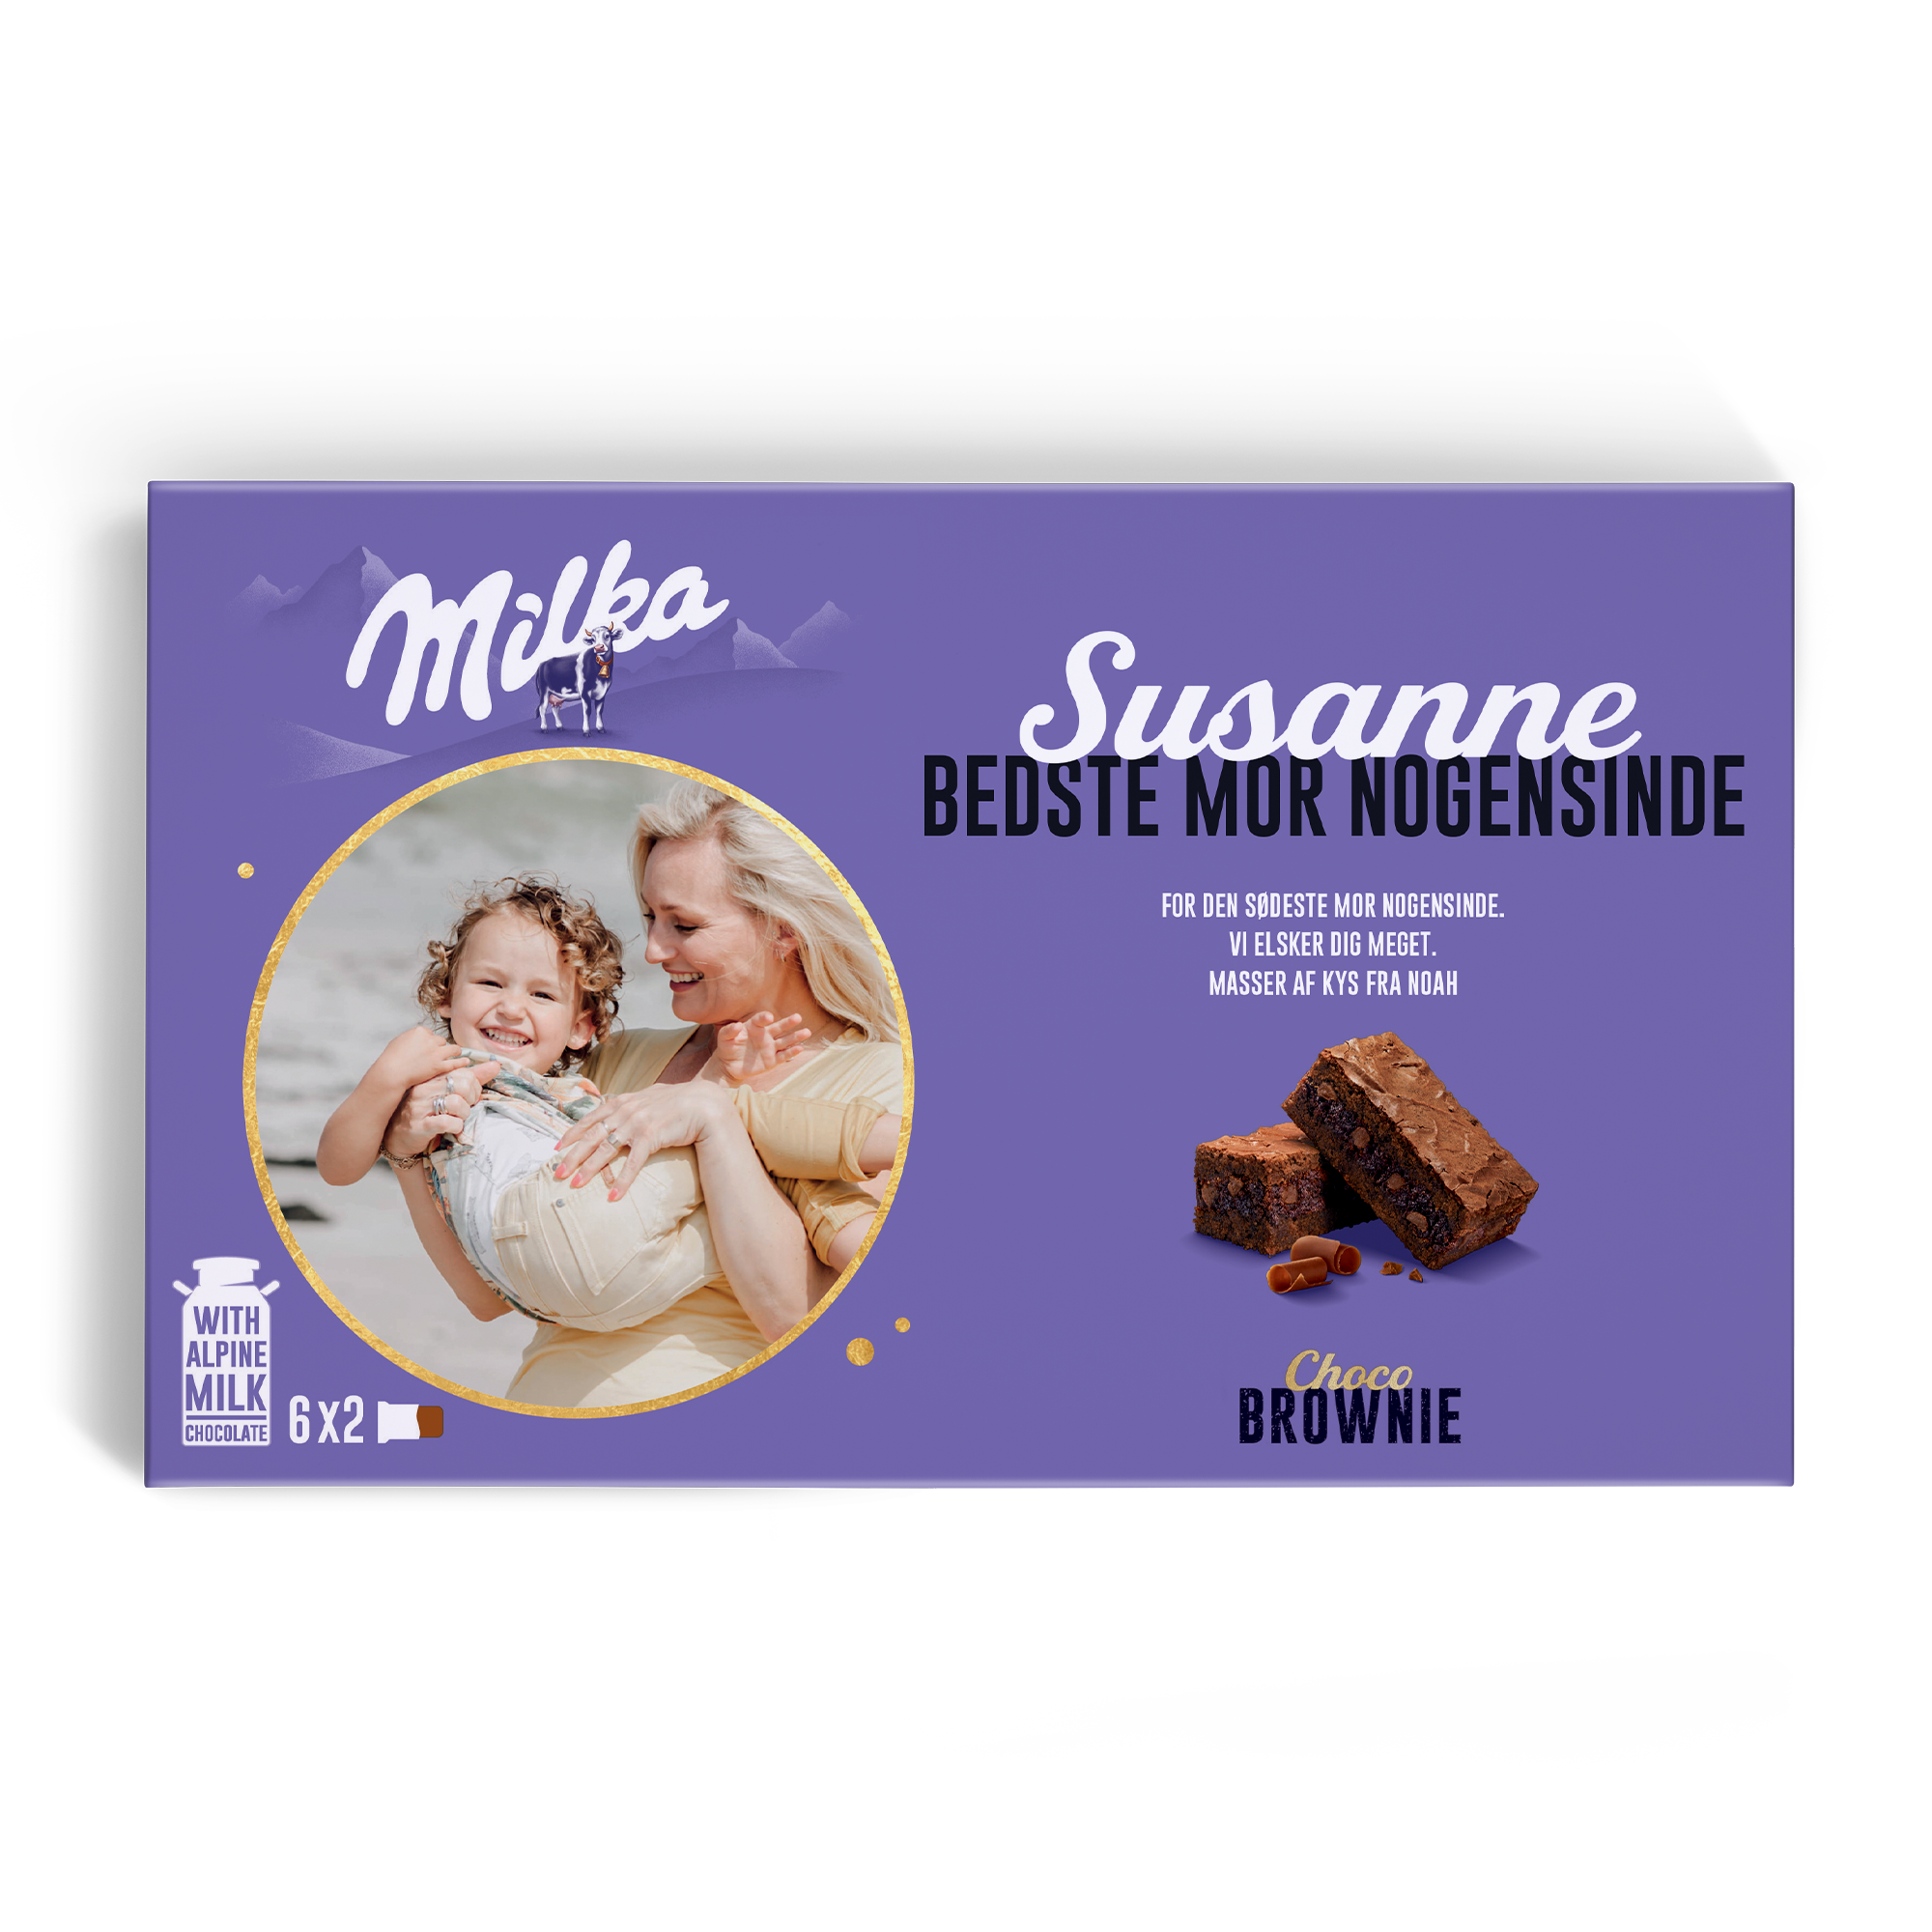 Milka chokolade gaveæske - Brownie